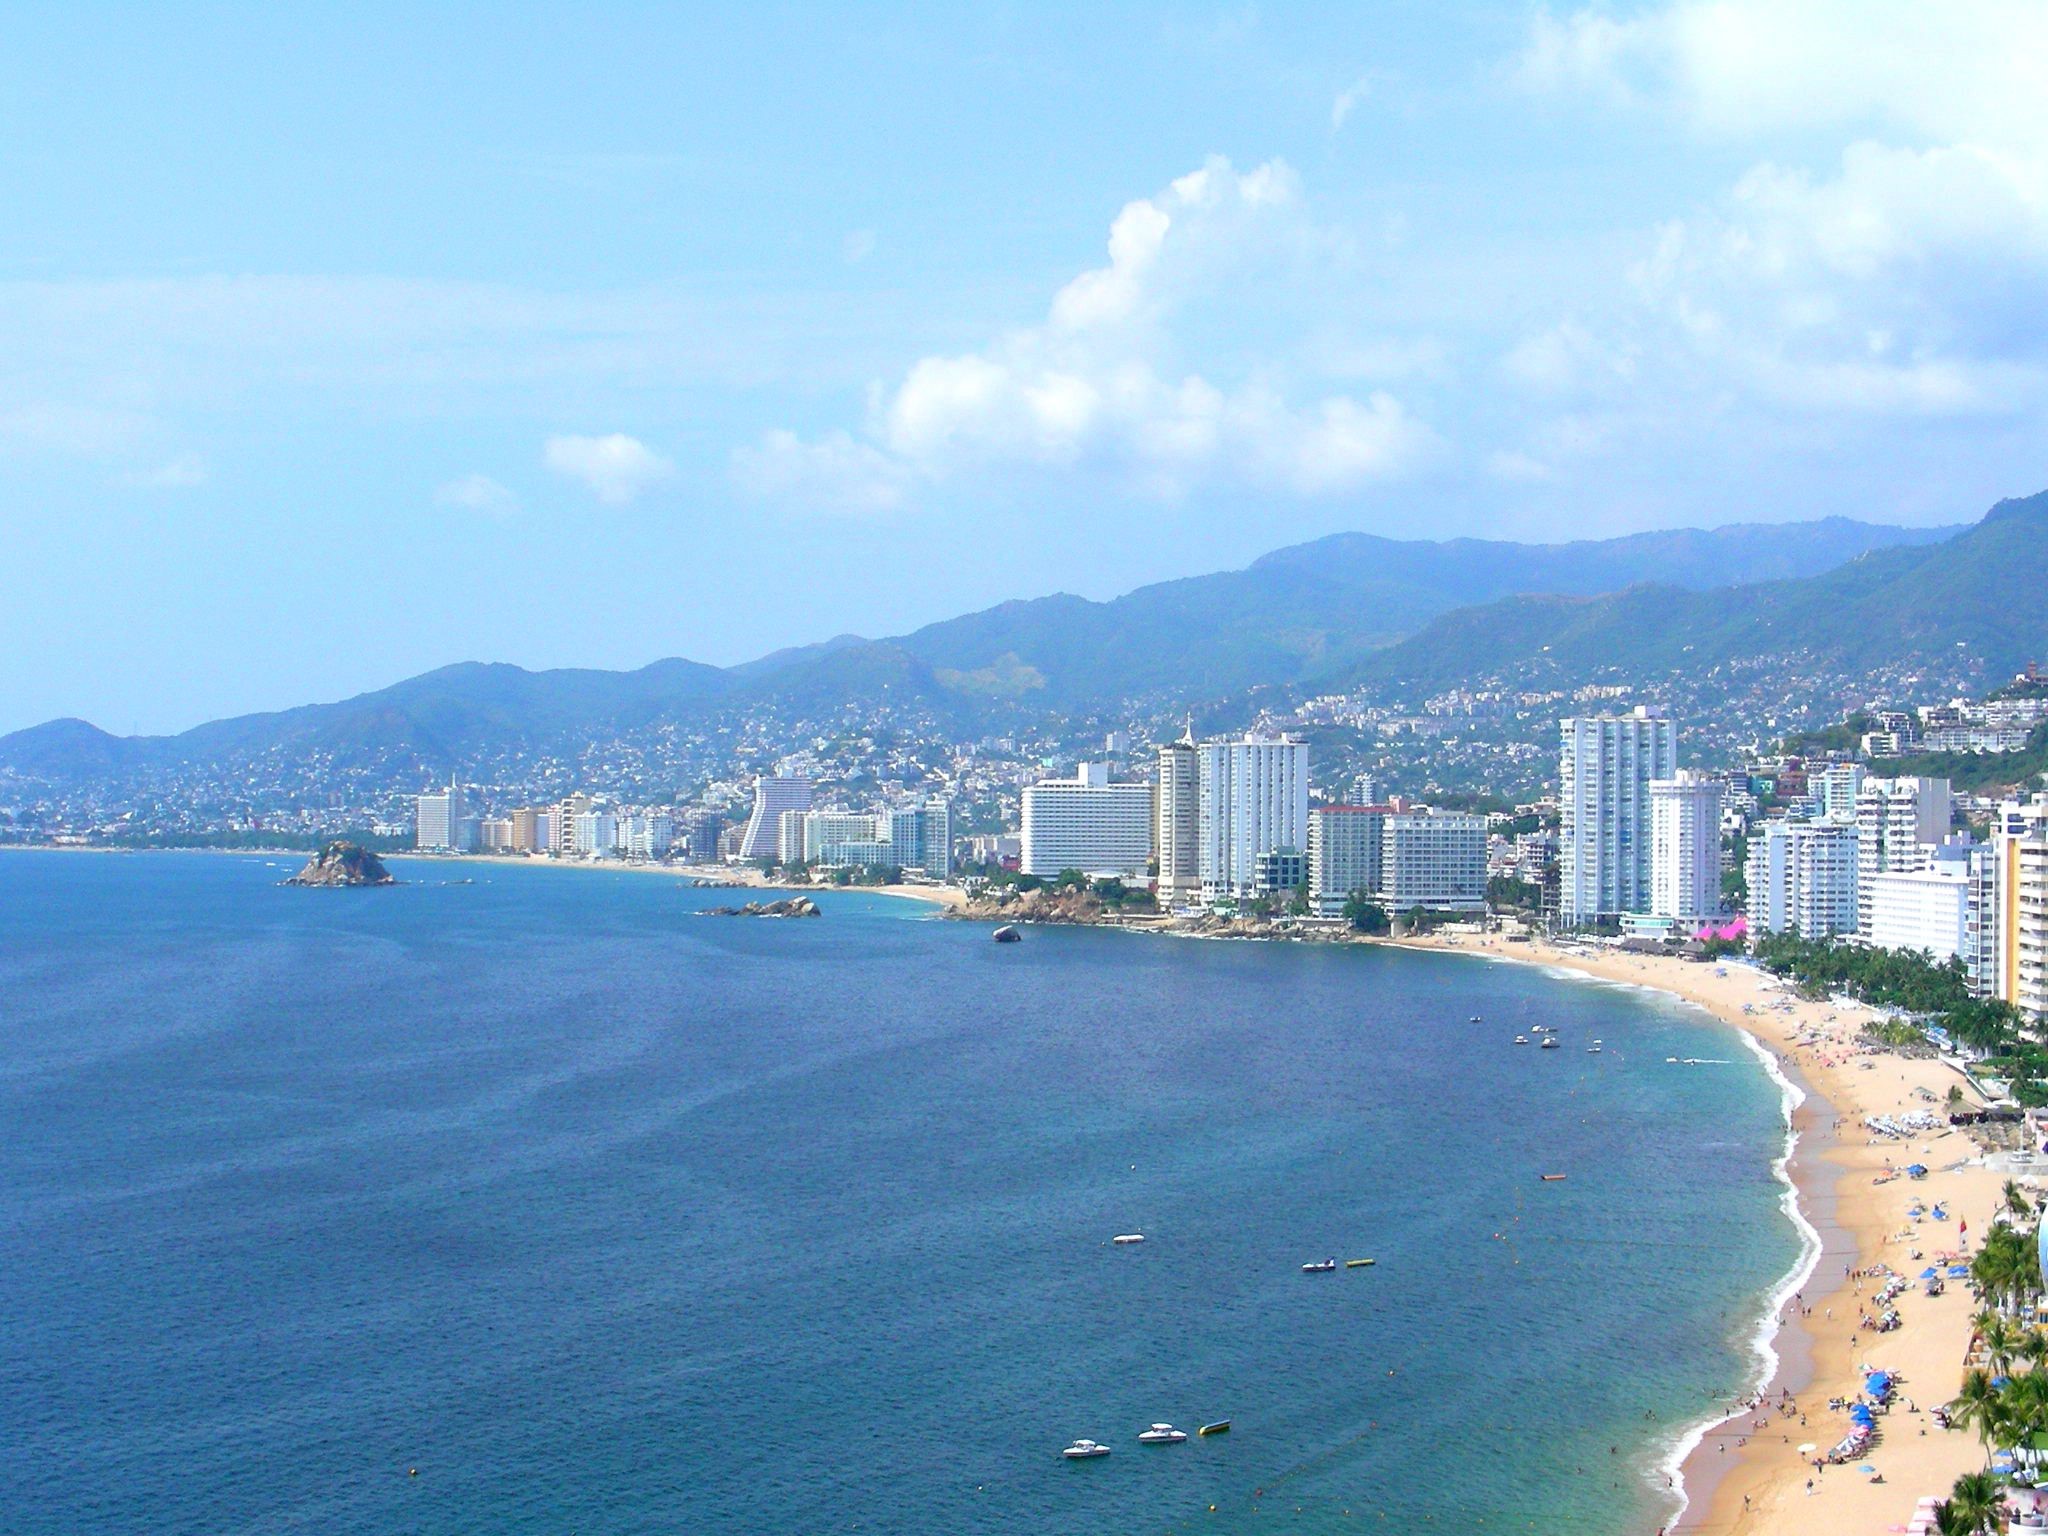 Experiencias Románticas en Yate en Acapulco: Fotografía, Pedidas de Mano, Picnics y Cenas para Parejas Apasionadas